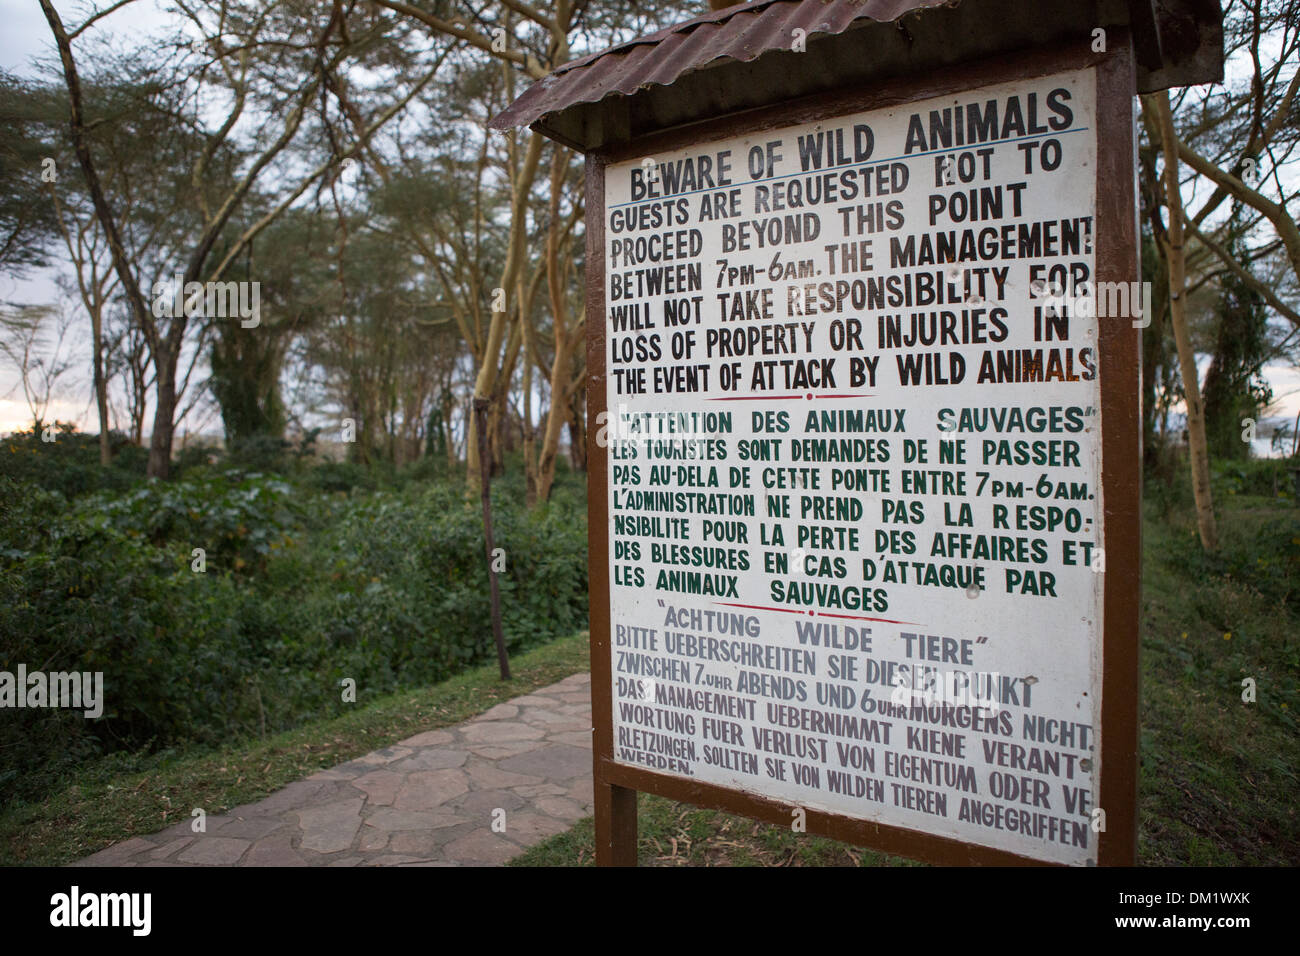 BEWARE of Wild Animals sign - Lake Naivasha, Kenya Stock Photo